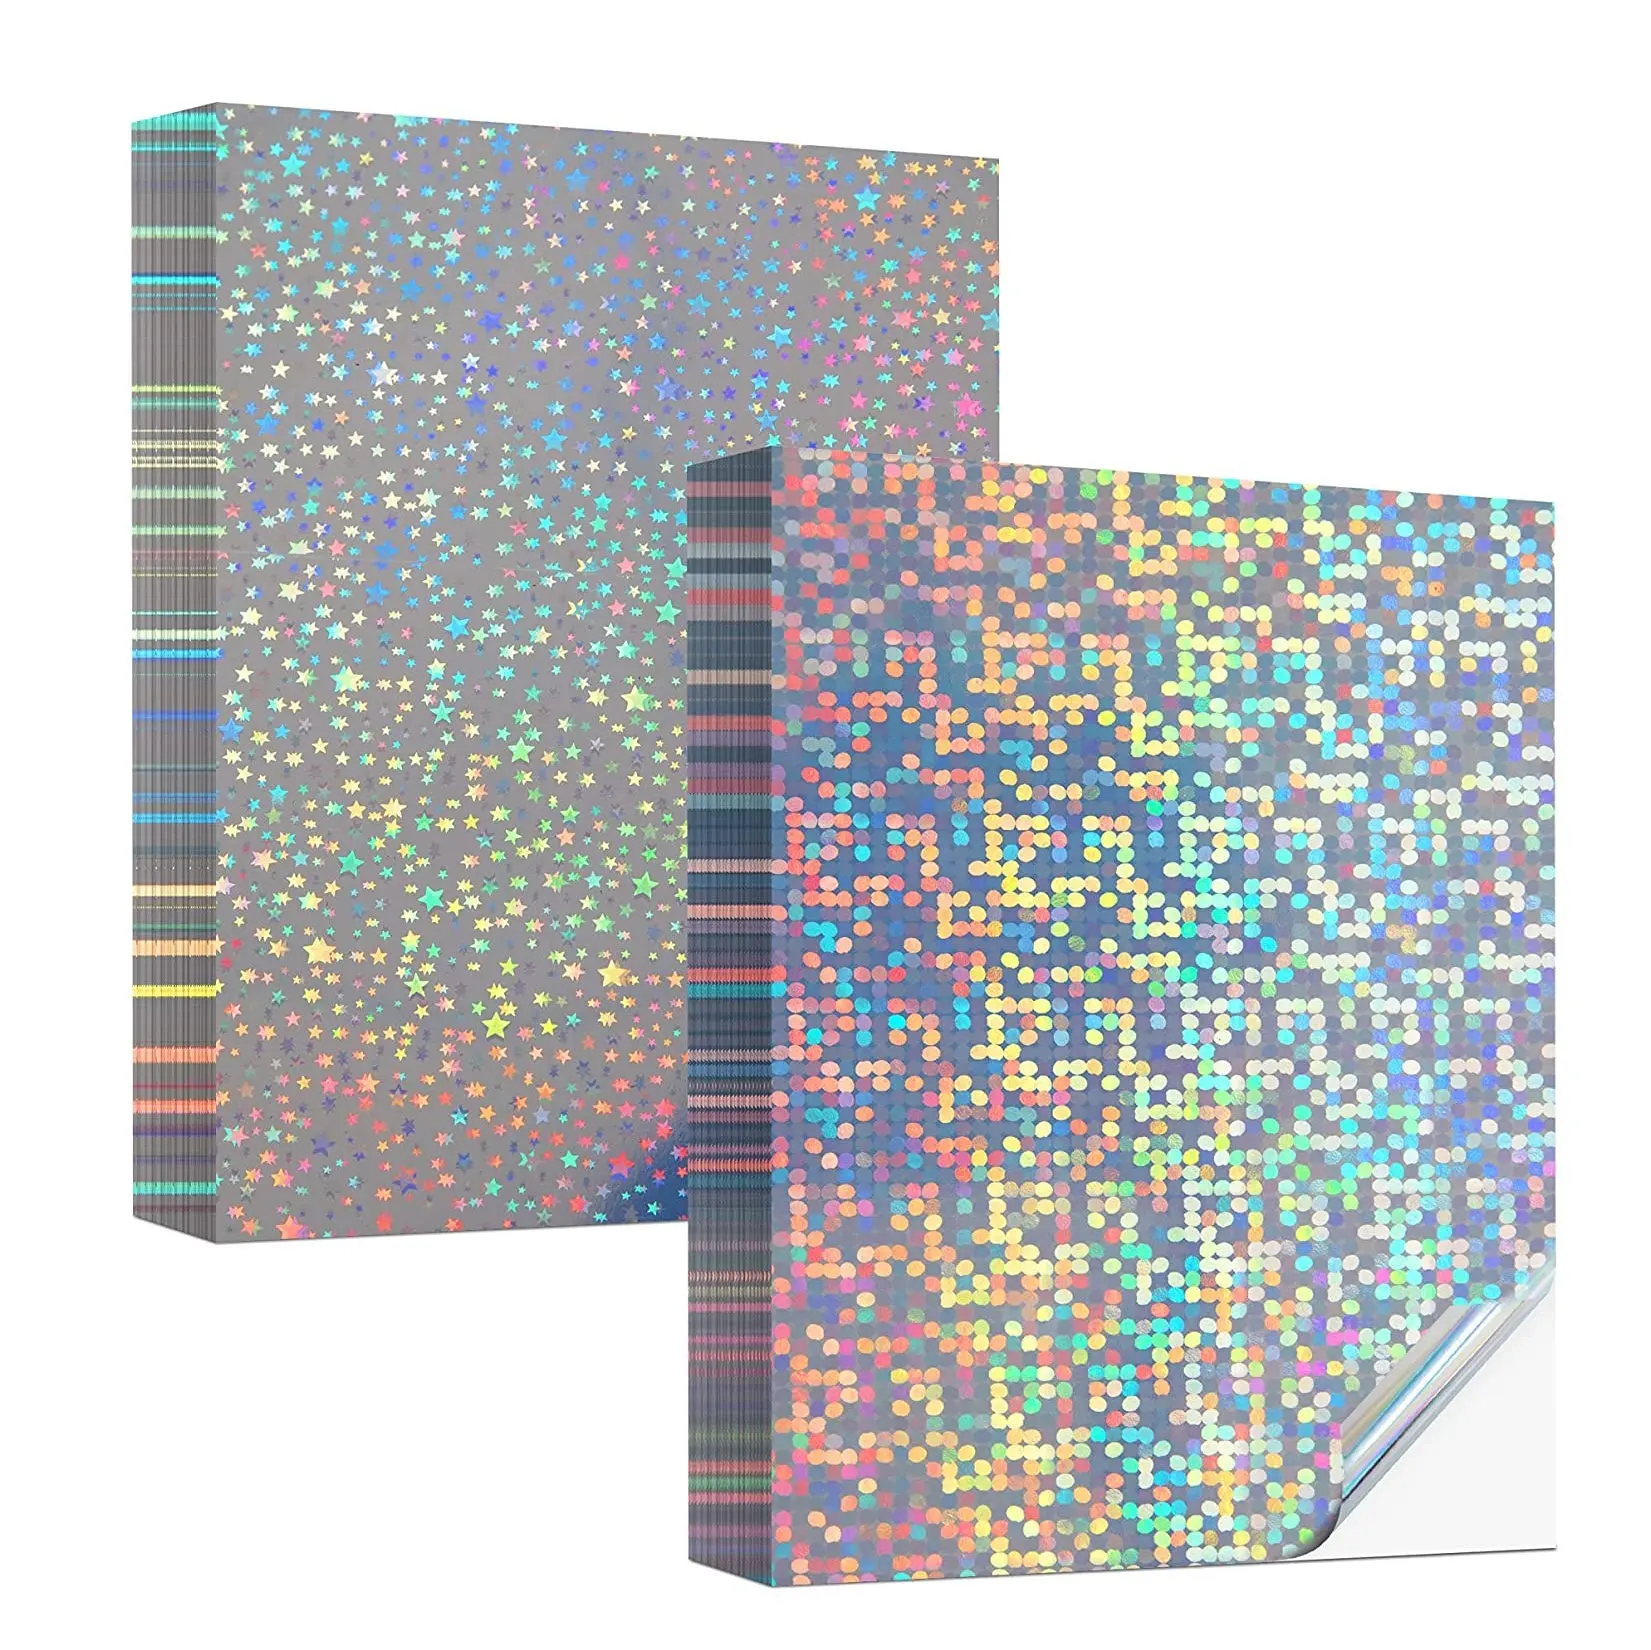 Rouleau de papier étiquettes en Pvc imprimable, autocollant en vinyle, motif hologramme, A3 et A4